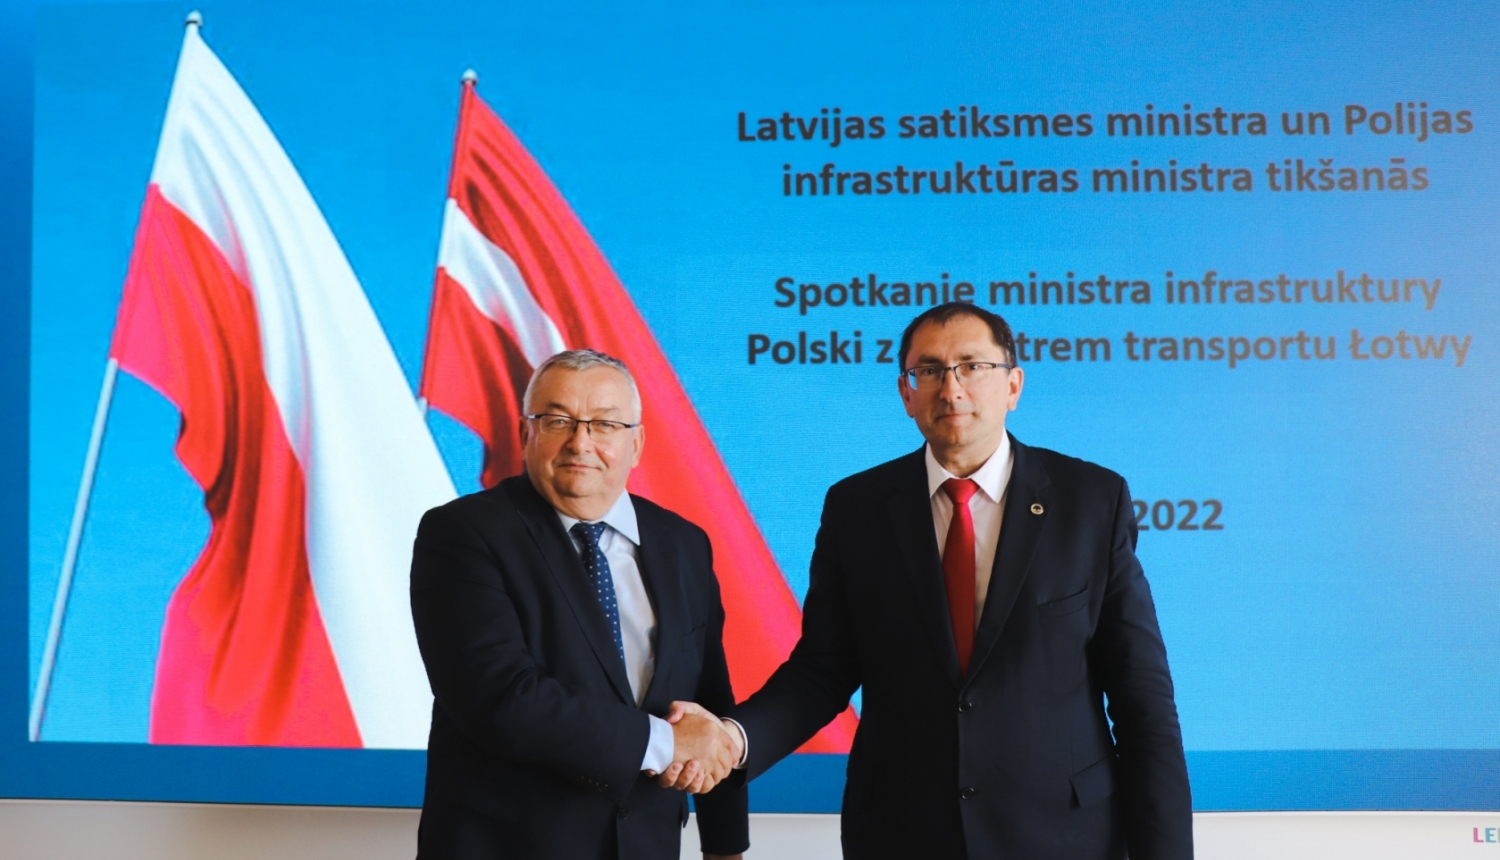 Polijas infrastruktūras ministrs Andžejs Adamčiks un Latvijas satiksmes ministrs Tālis Linkaits sarokojas